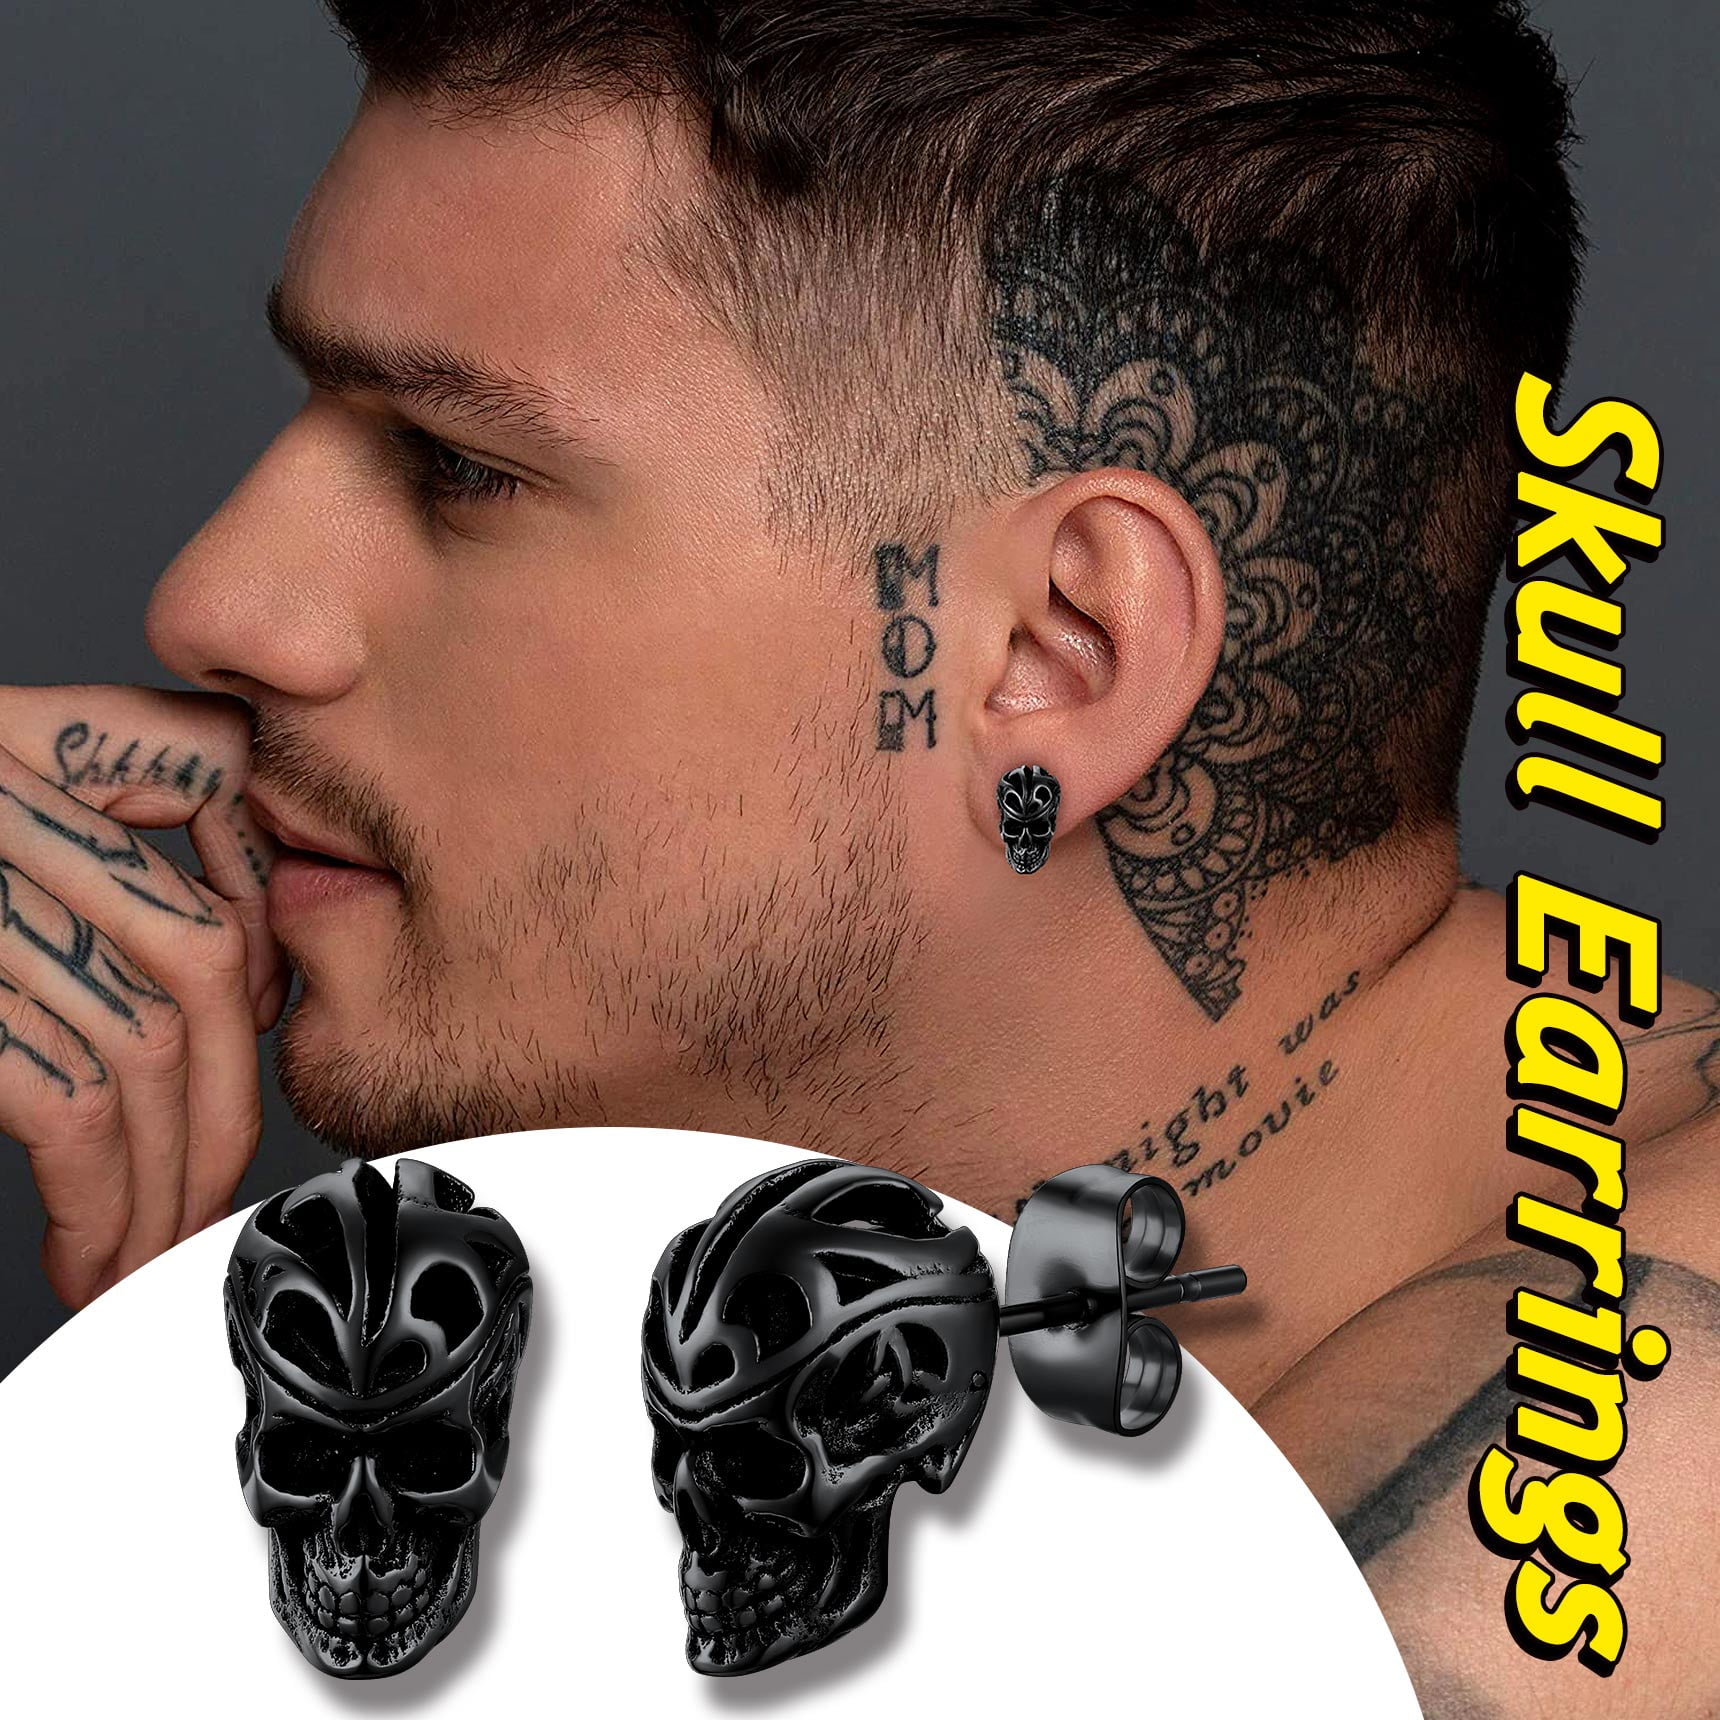 Plug Men Steel Black Boys Women for mm Earring Stainless 5-10 Earrings 6PCS Earrings  Earrings Black One Size - Walmart.com